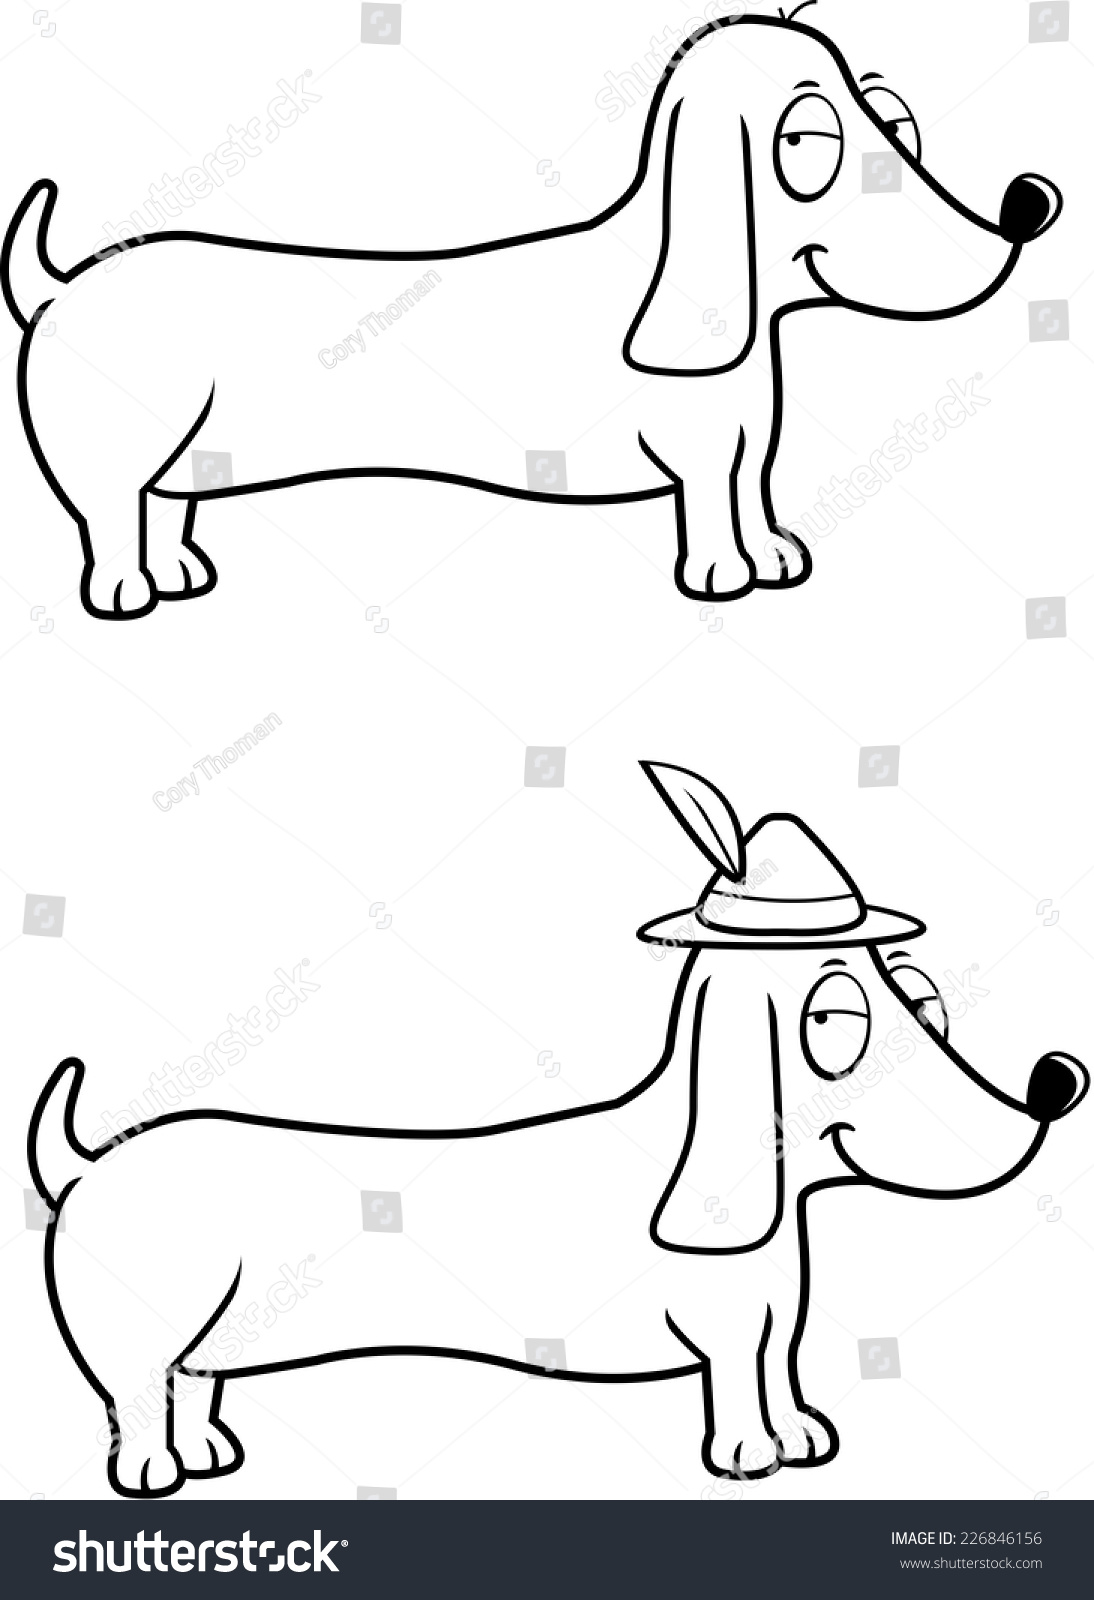 SVG of A happy cartoon Dachshund dog with an Oktoberfest hat on. svg